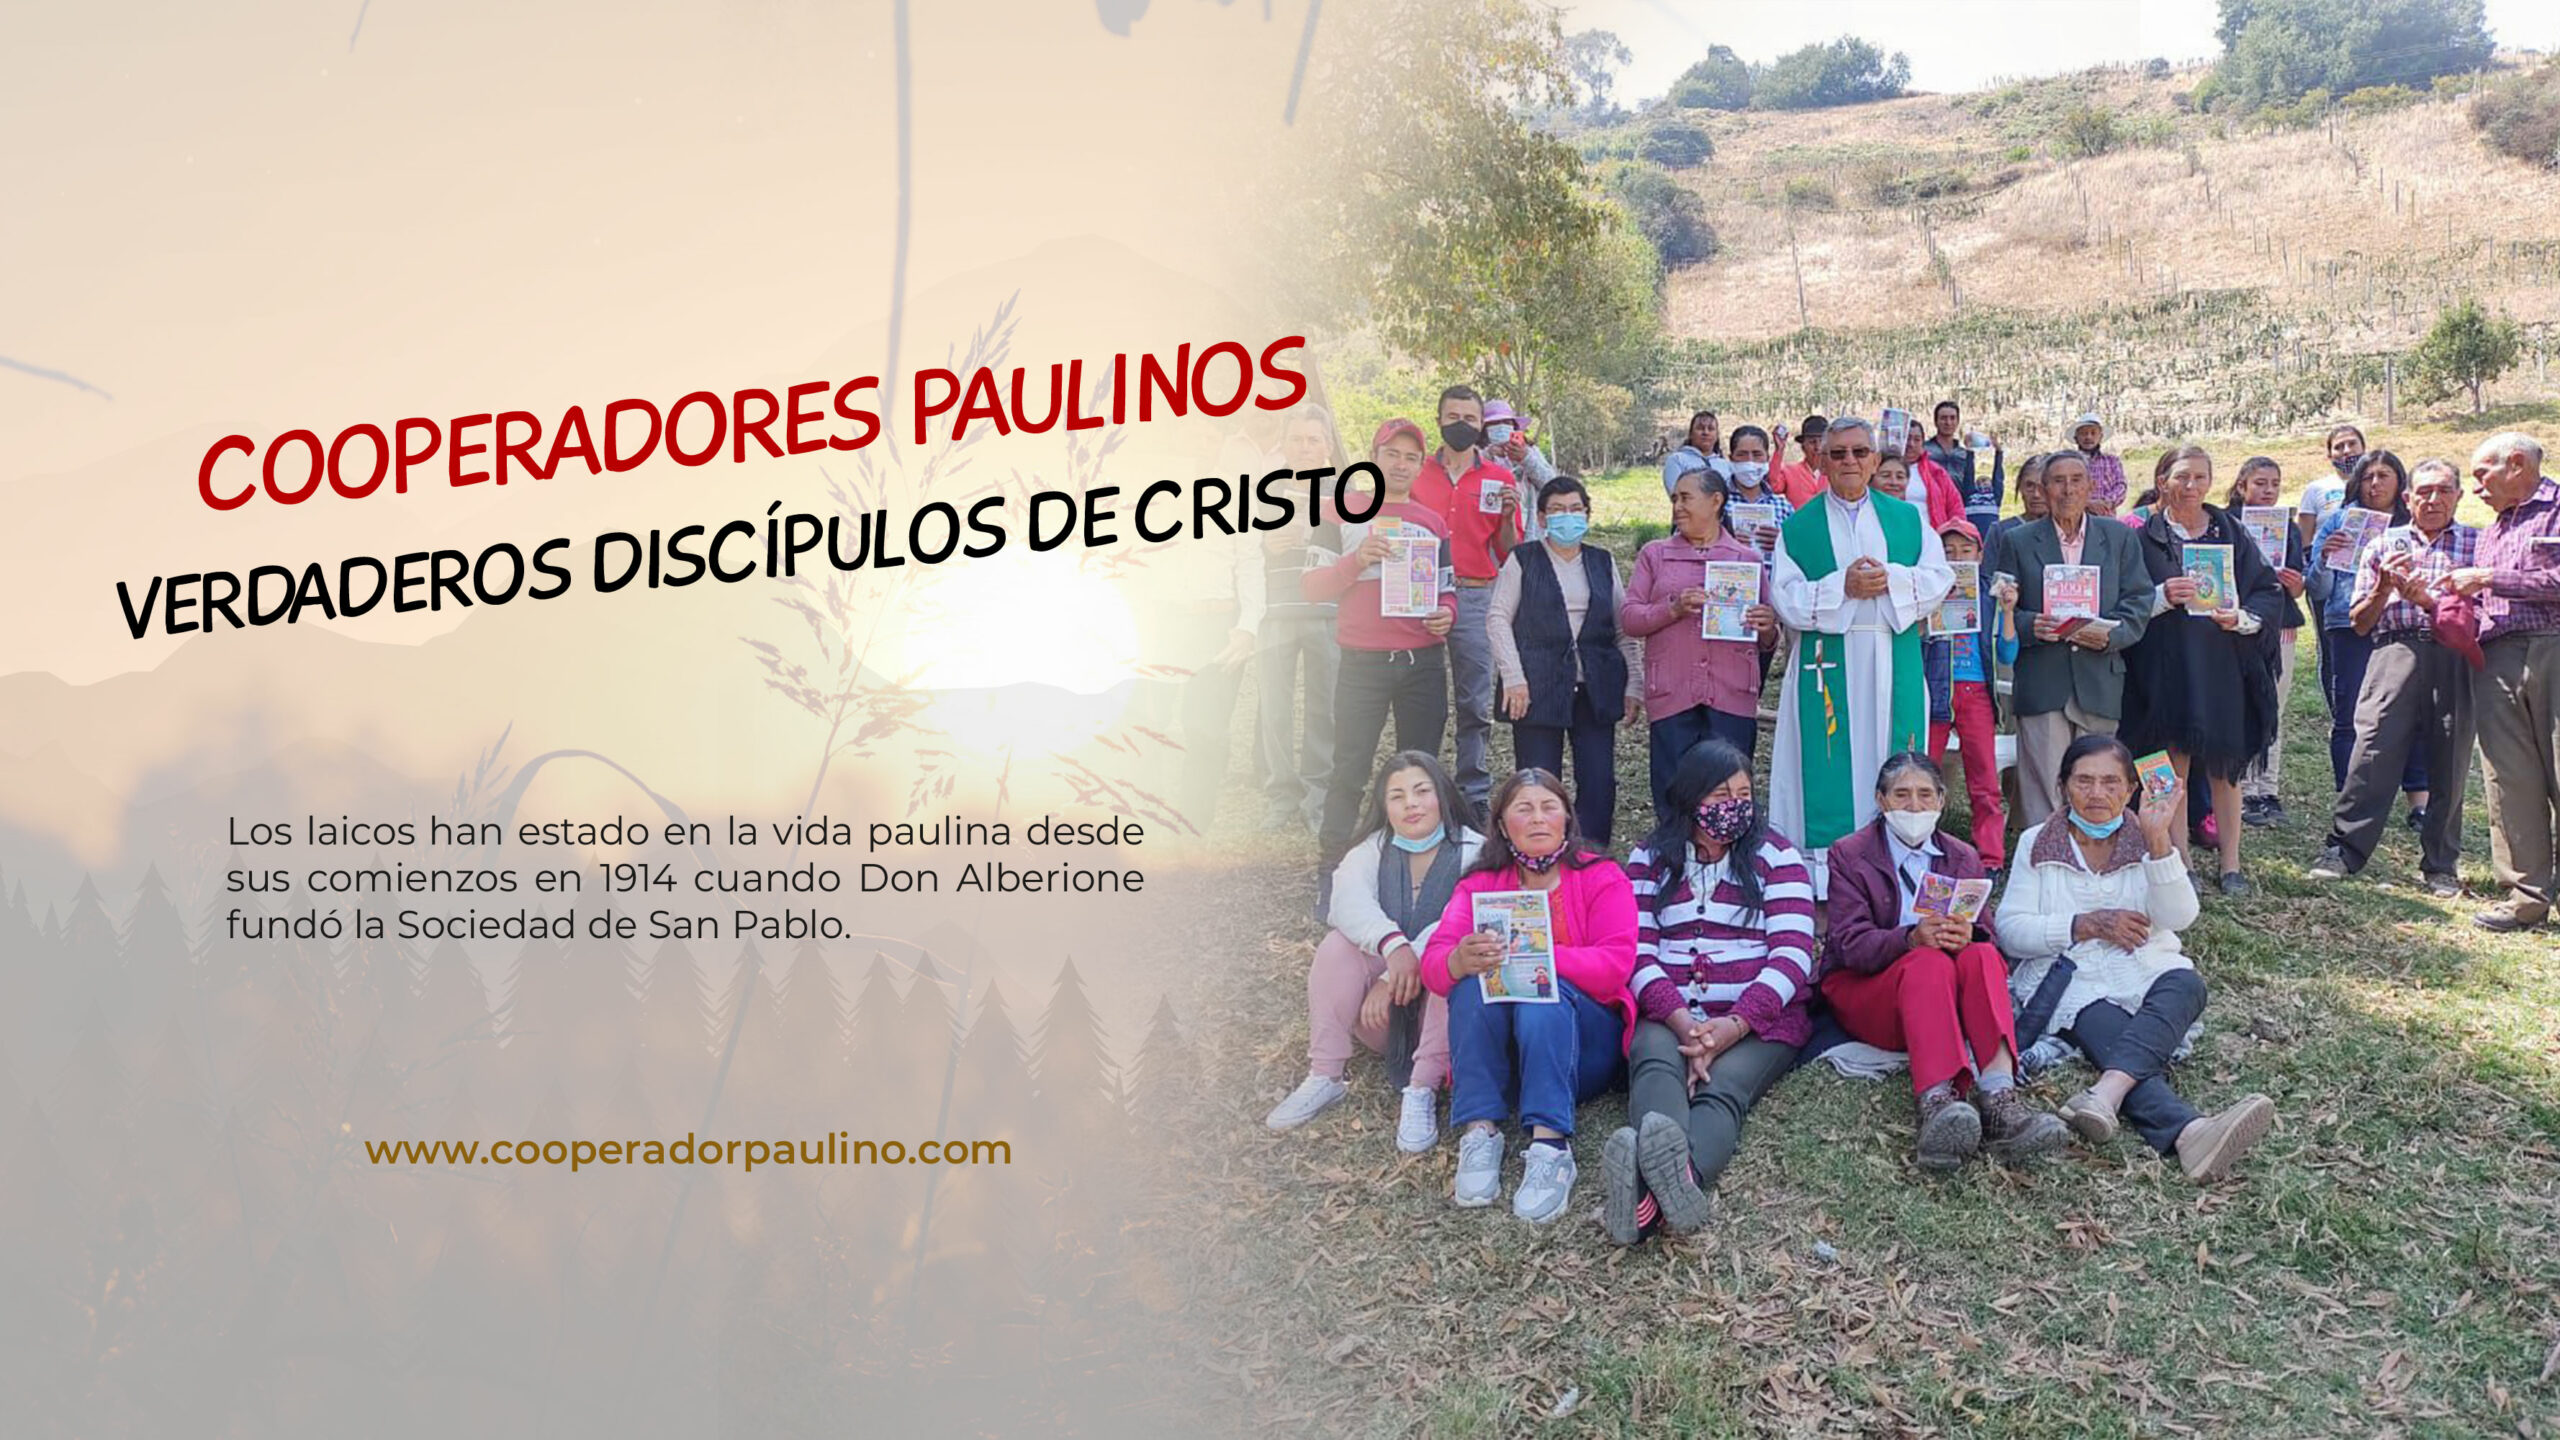 COOPERADORES PAULINOS: VERDADEROS DISCÍPULOS DE CRISTO